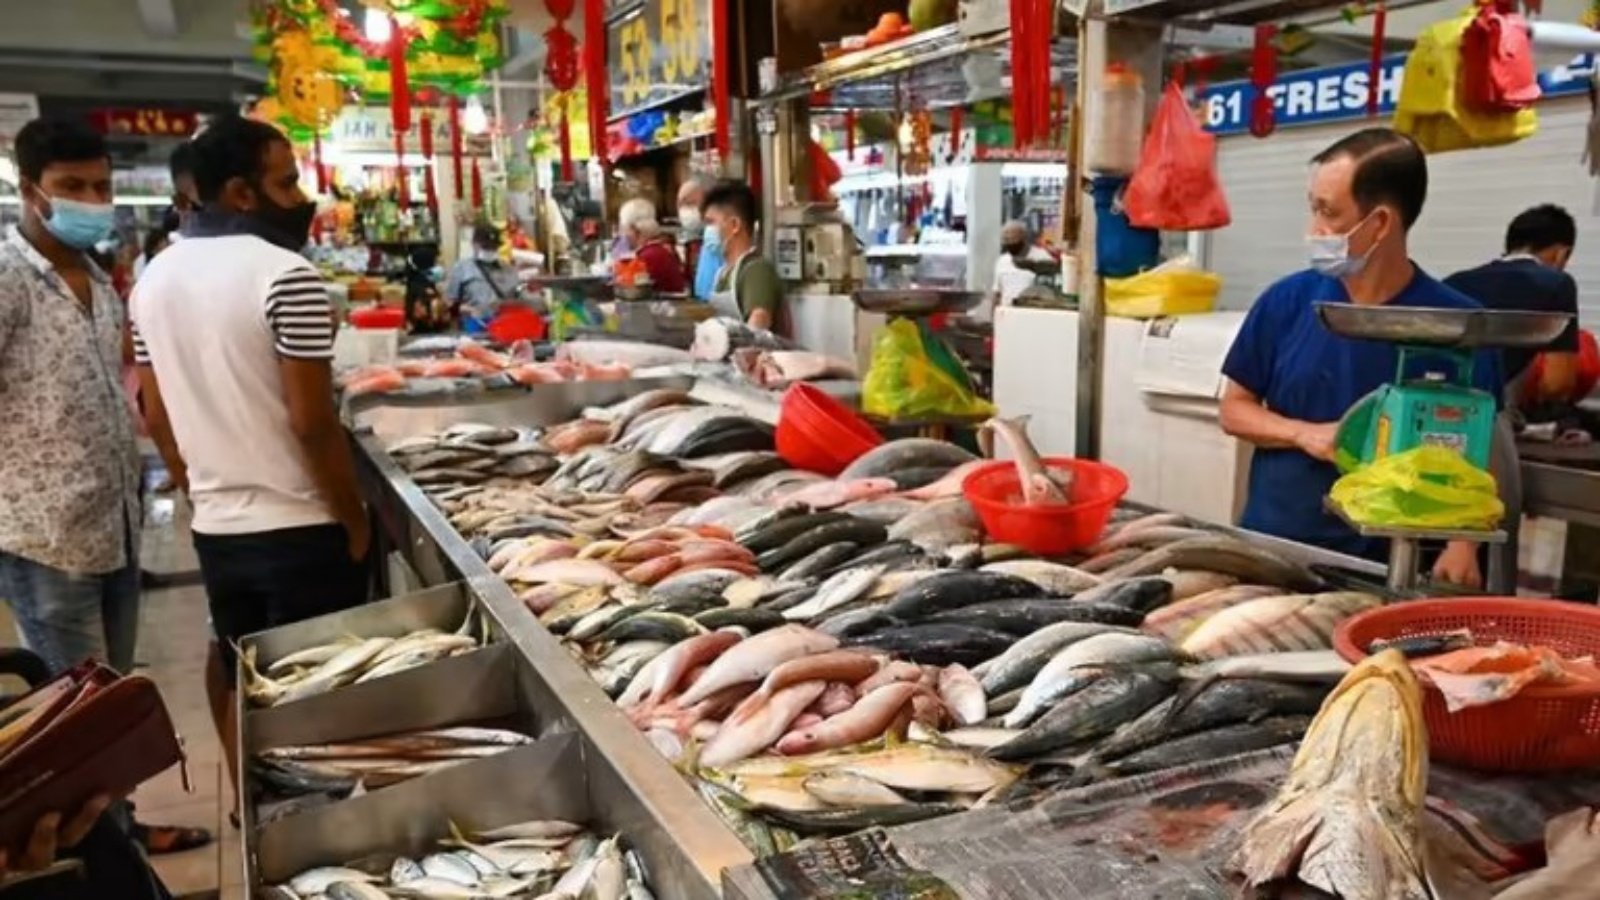 أشخاص في سوق السمك بسنغافورة (توضيحية)